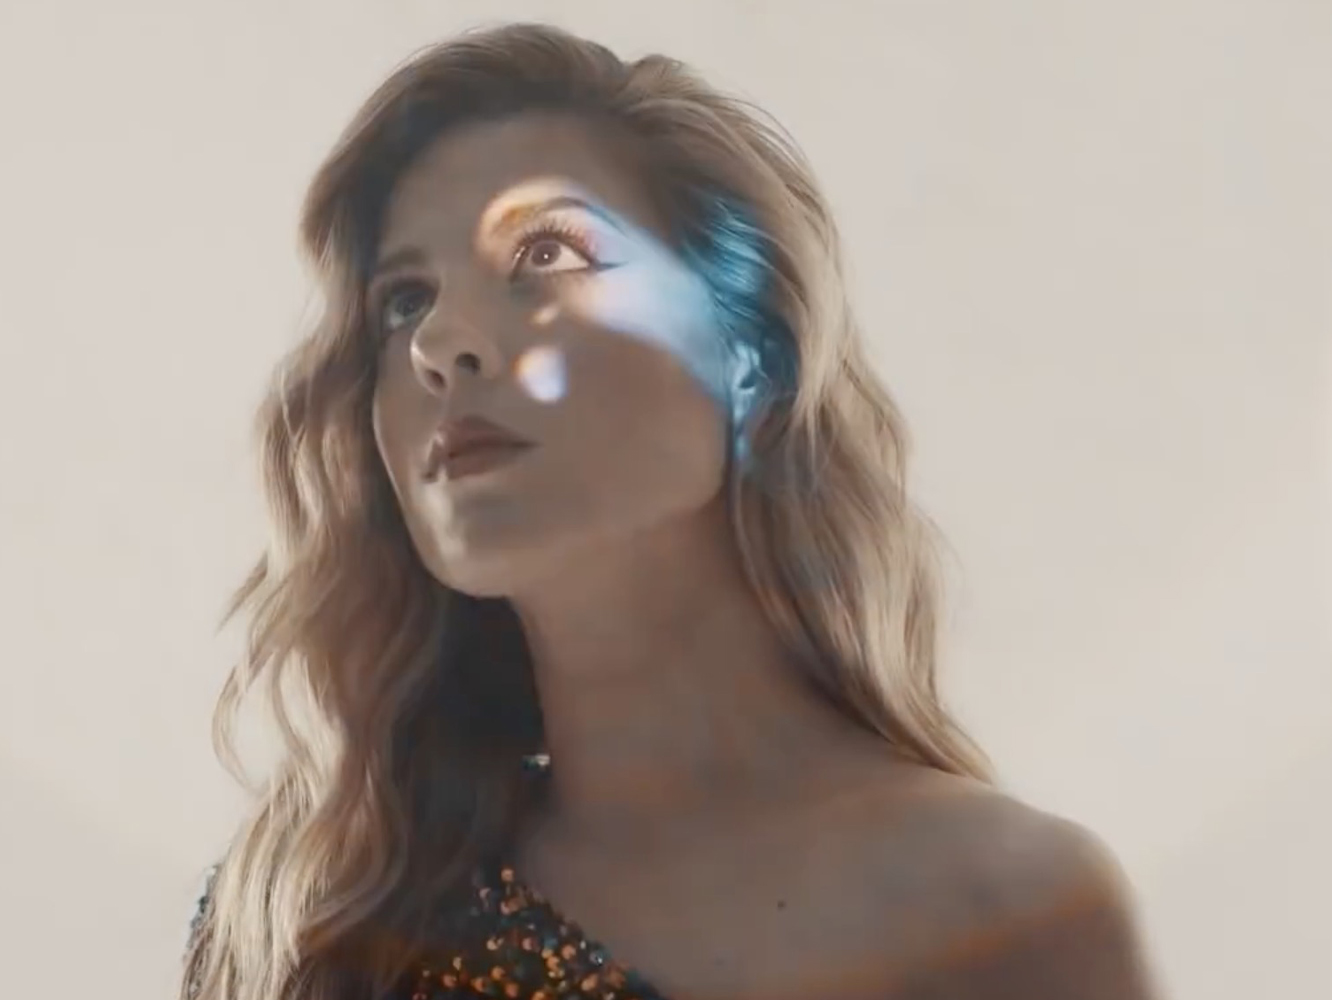  Miriam Rodríguez eclosiona -fantástico verbo- en ‘Desperté’, su nuevo single